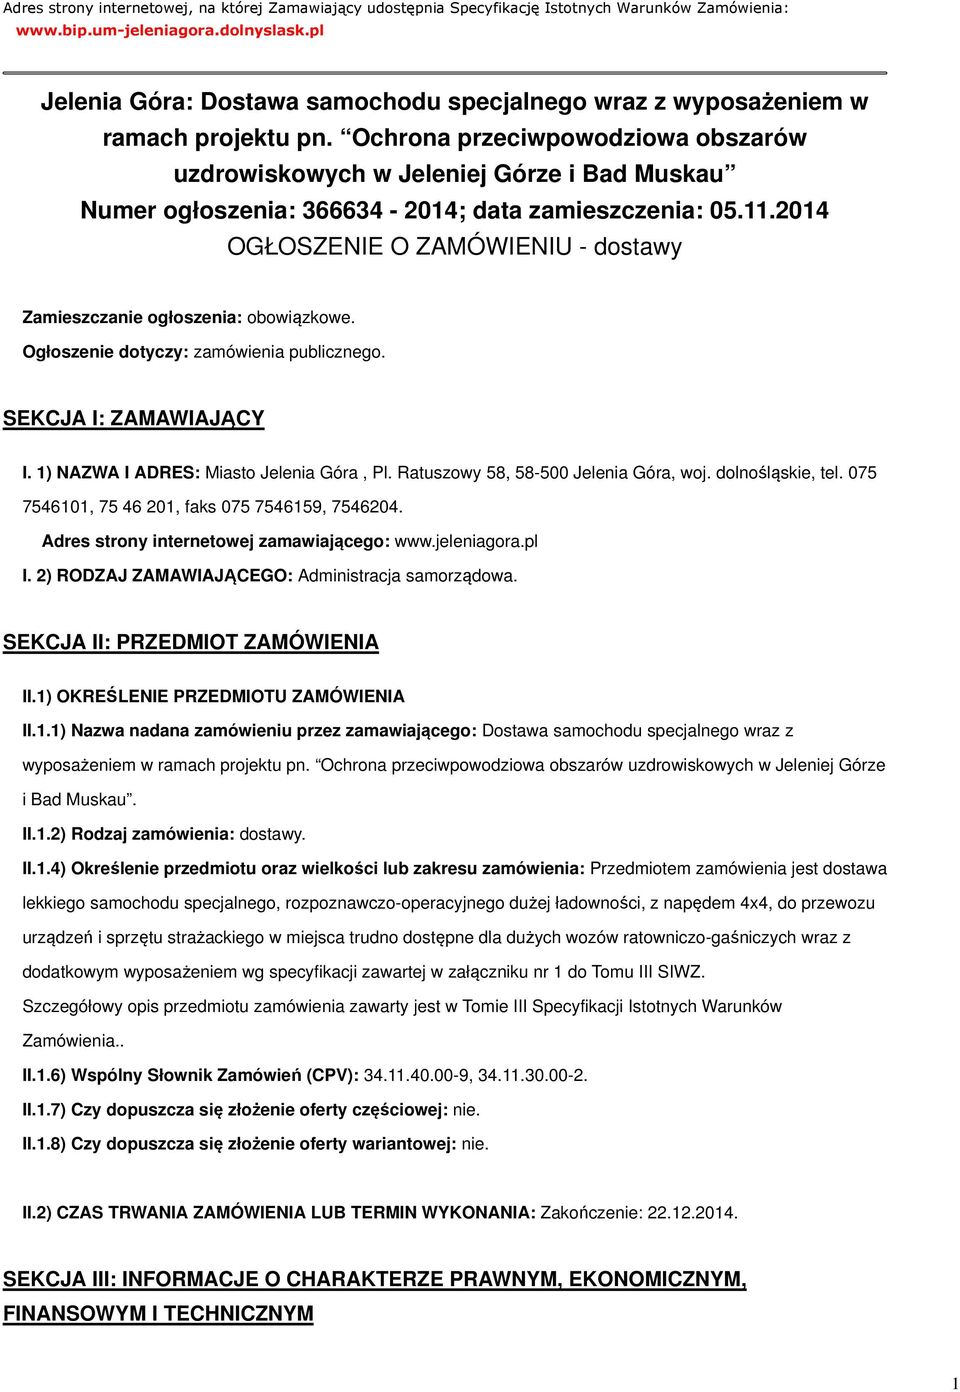 Ochrona przeciwpowodziowa obszarów uzdrowiskowych w Jeleniej Górze i Bad Muskau Numer ogłoszenia: 366634-2014; data zamieszczenia: 05.11.